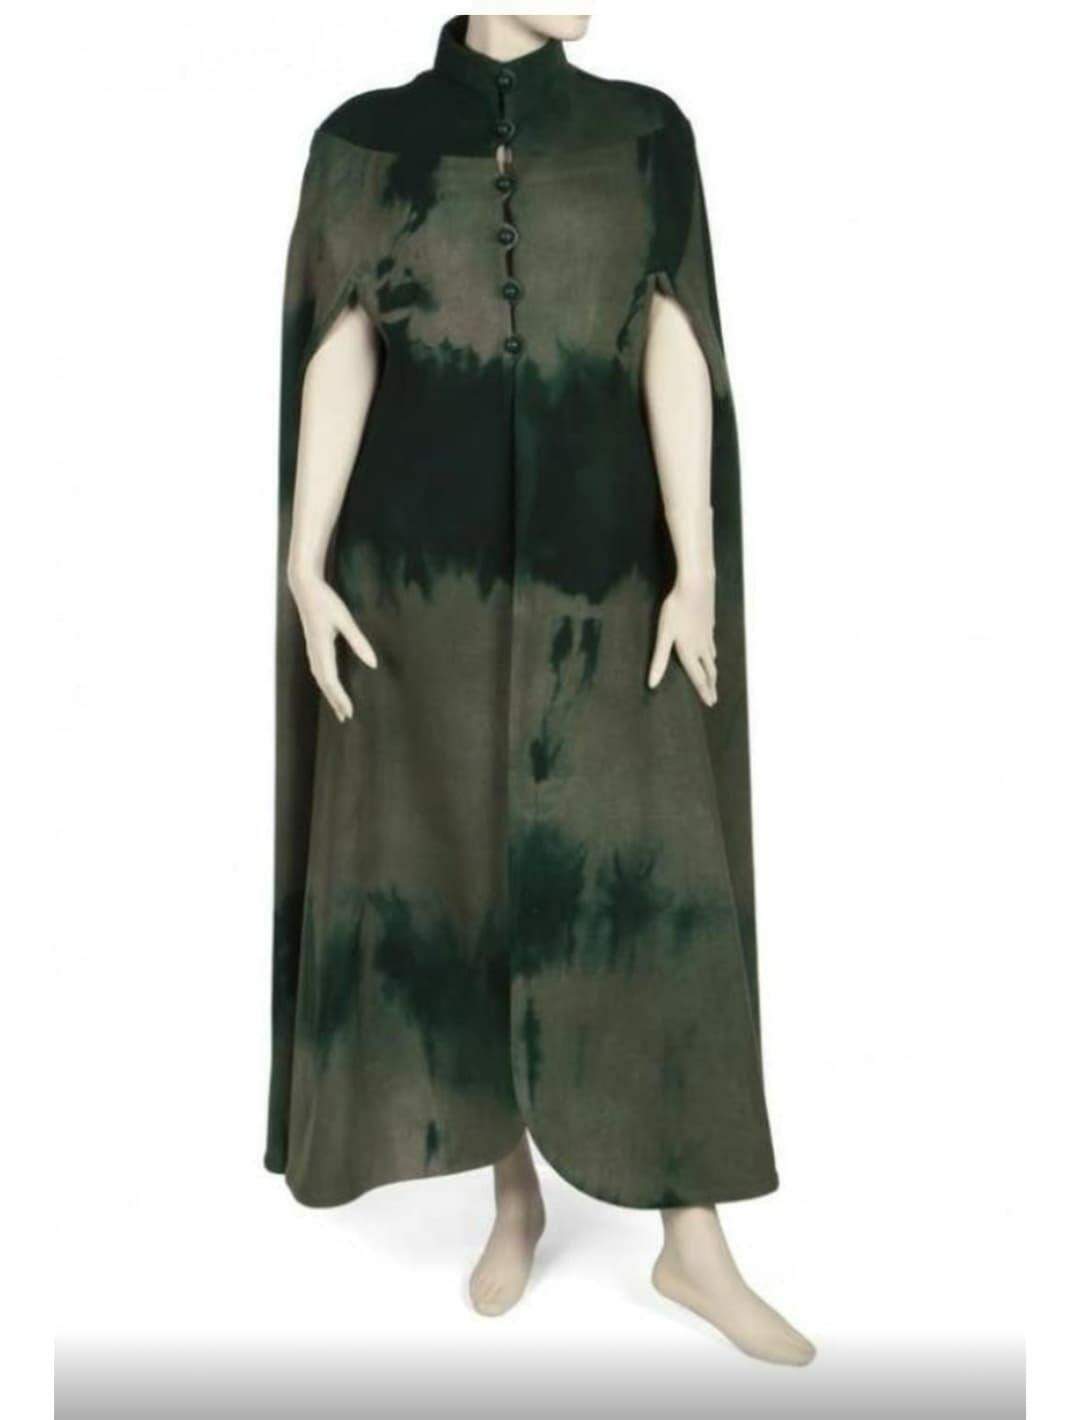 Vestido usado no Oscar e outros itens de Elizabeth Taylor irão a leilão.